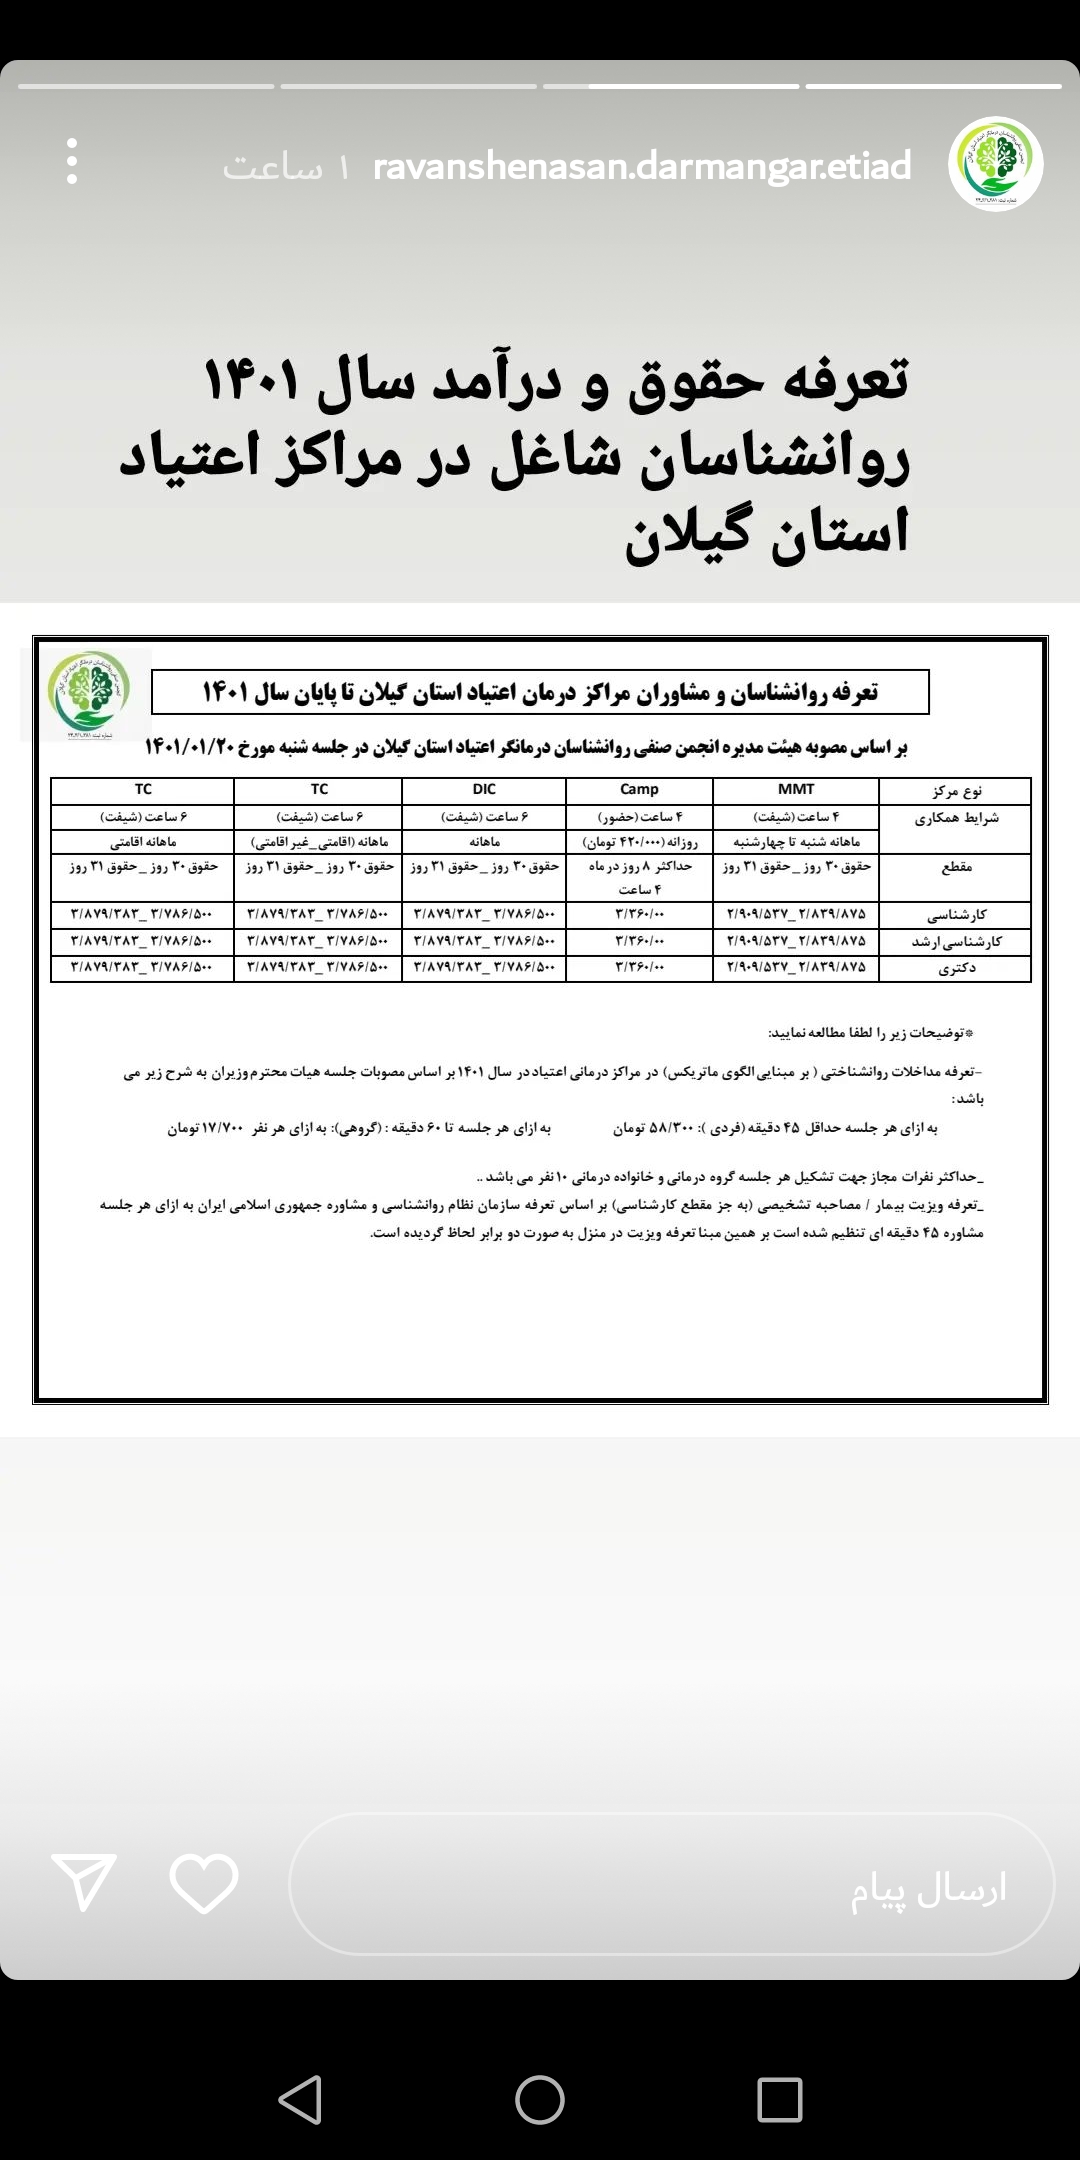 تصویب تعرفه های انجمن صنفی تهران در انجمن صنفی گیلان